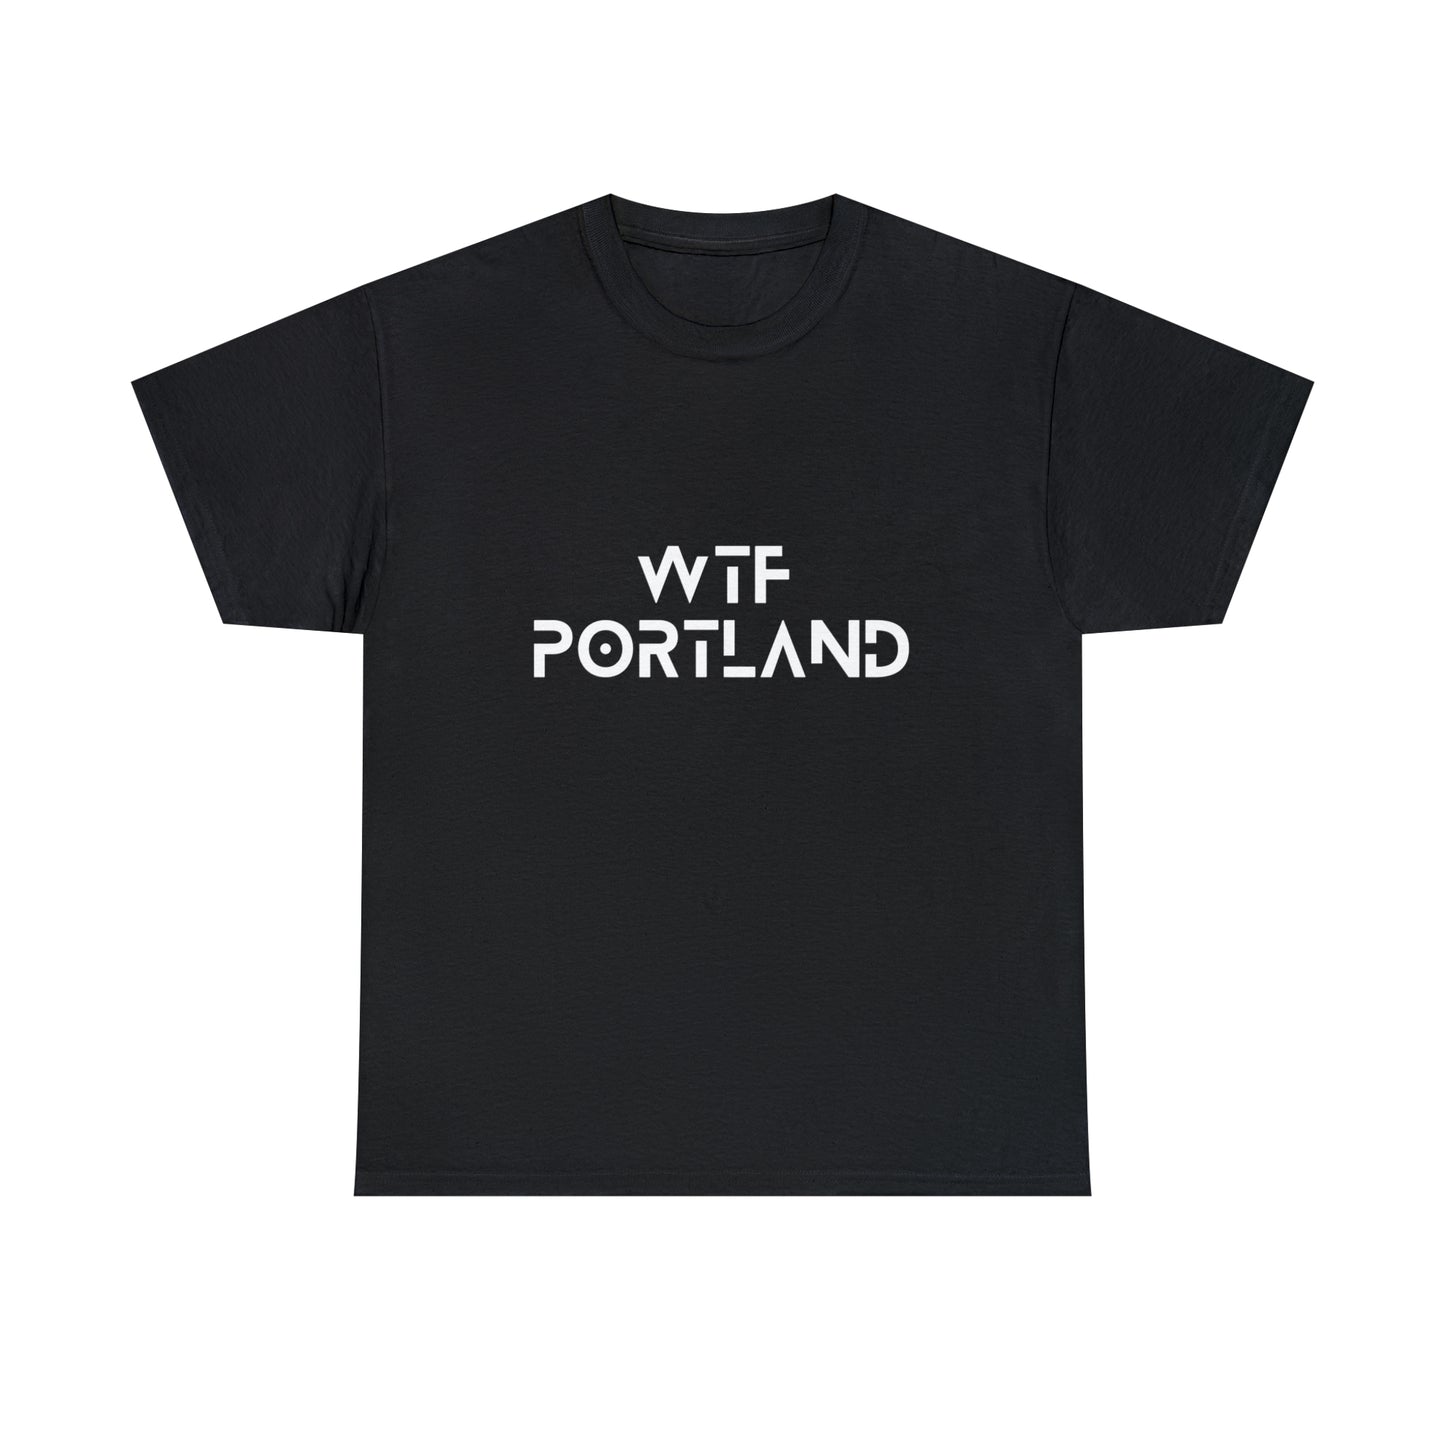 WTF PORTLAND - "OG" T-Shirt